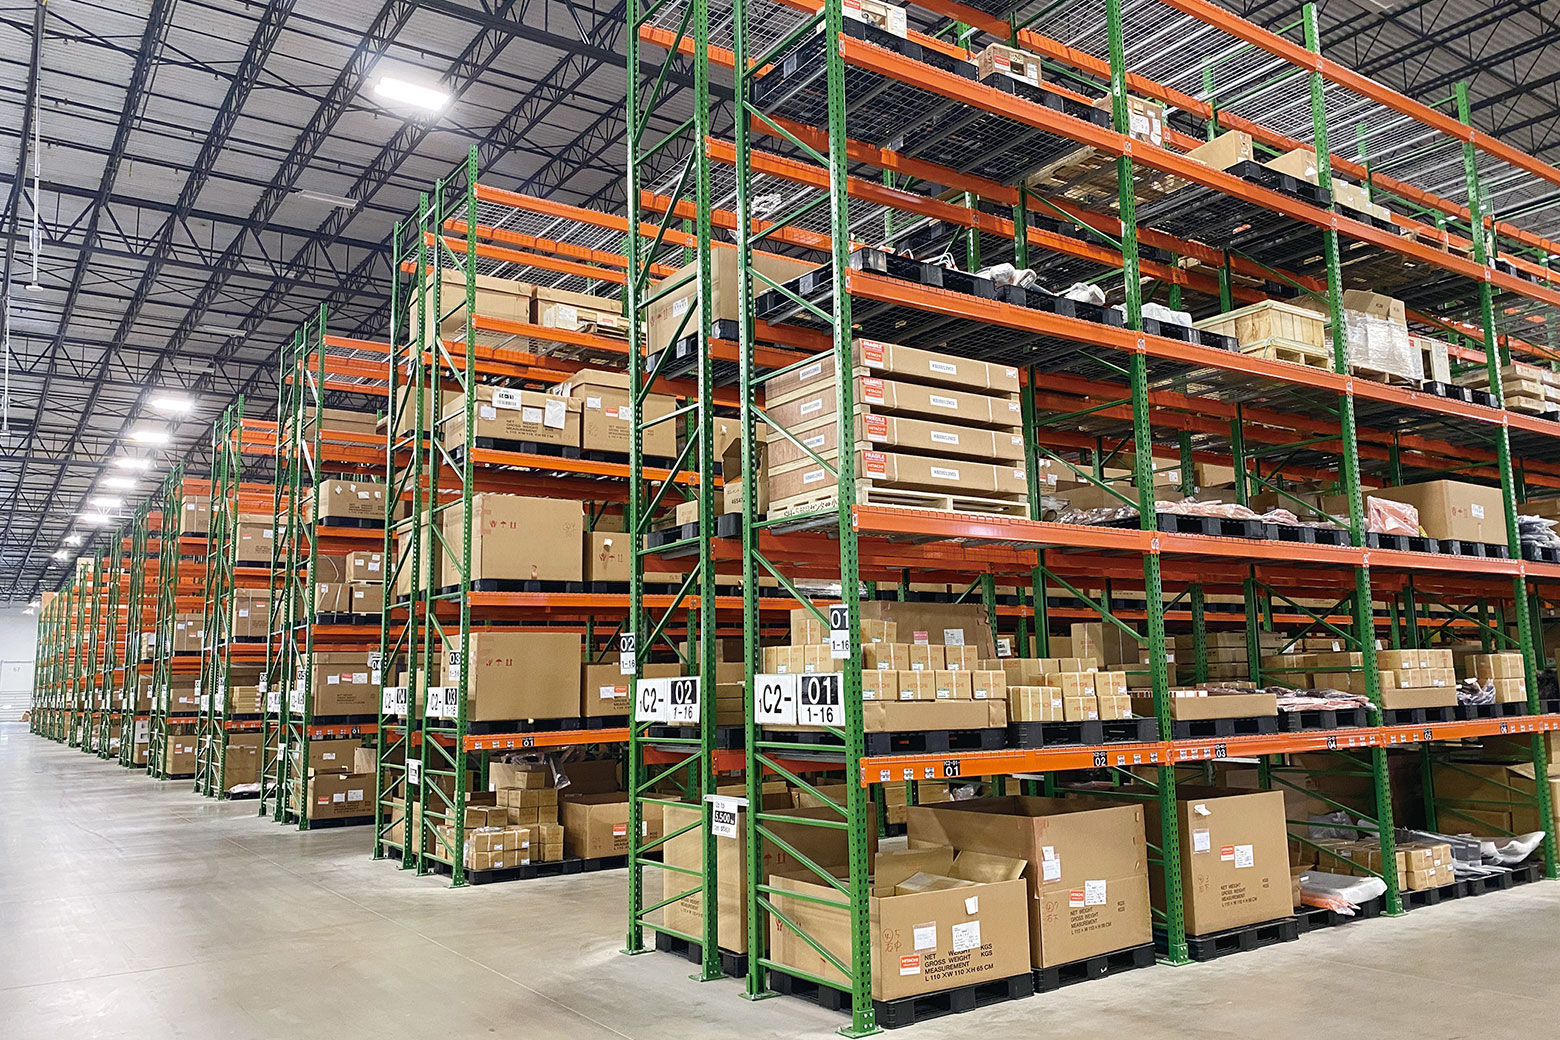 22年3月に稼働を開始したジョージア州にあるジャクソン部品倉庫。取り扱う部品点数は 7万種類にのぼり、米州全域に供給する部品を保管している。